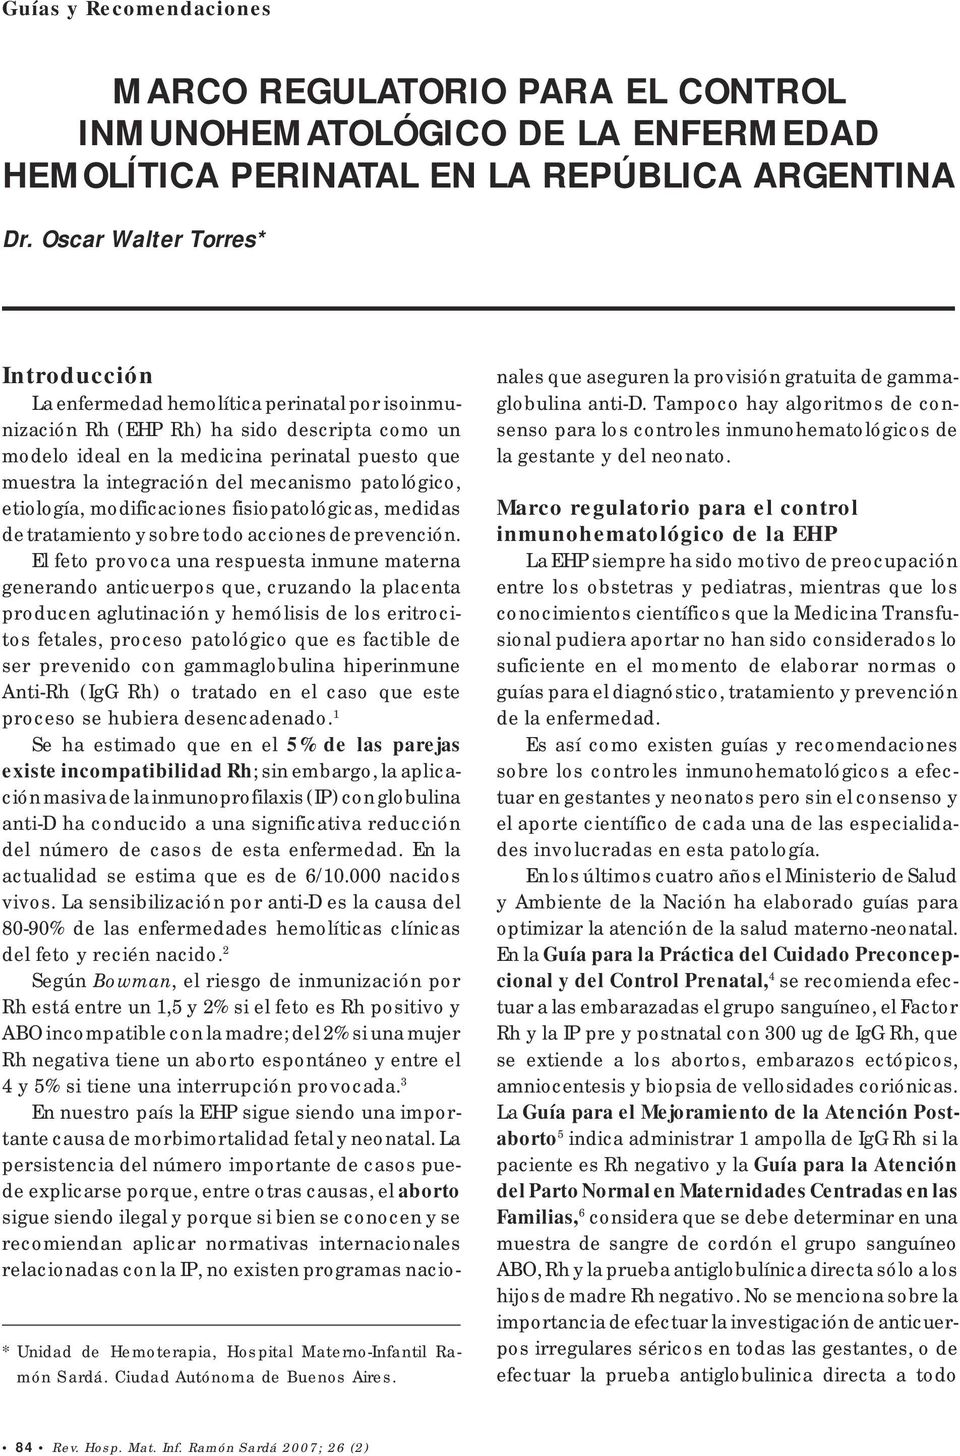 Introducción La enfermedad hemolítica perinatal por isoinmunización Rh (EHP Rh) ha sido descripta como un modelo ideal en la medicina perinatal puesto que muestra la integración del mecanismo